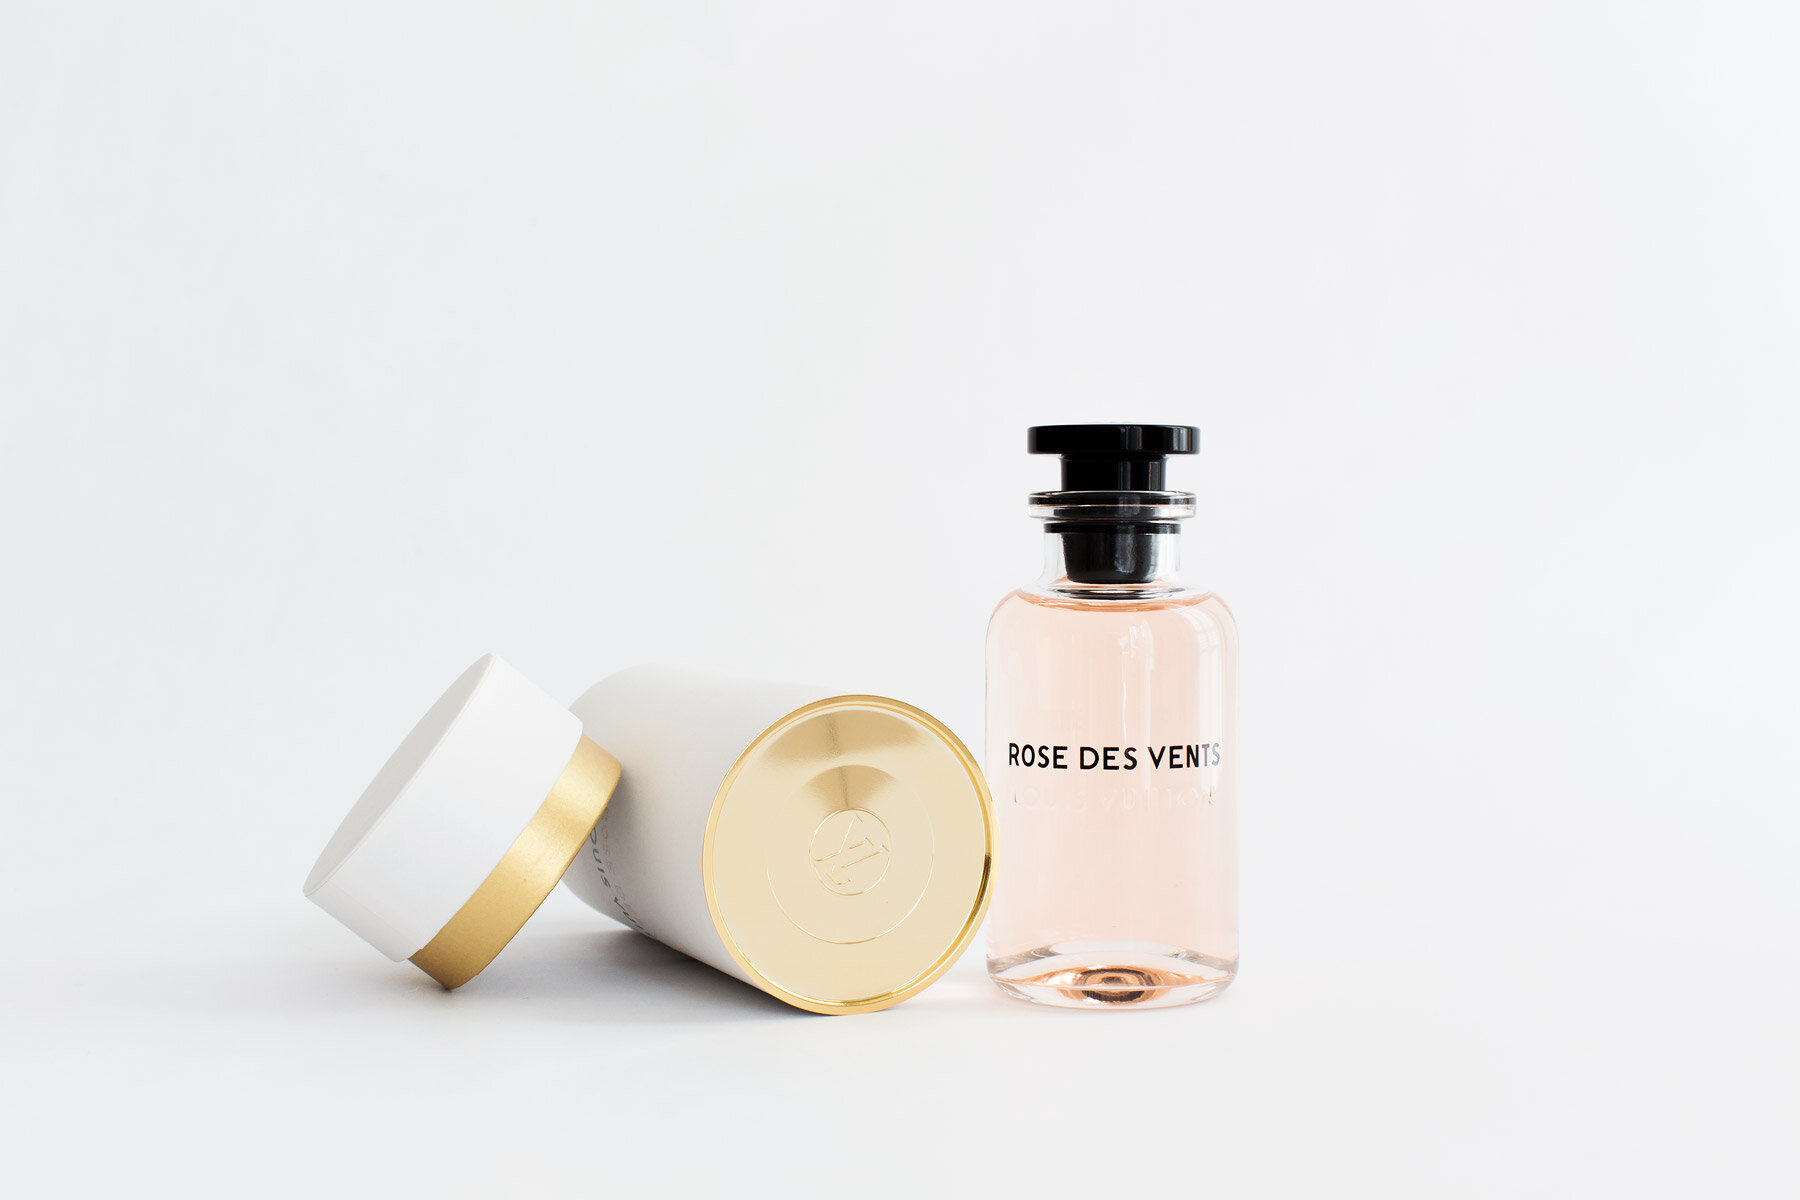 Coquette: Les Parfums Louis Vuitton